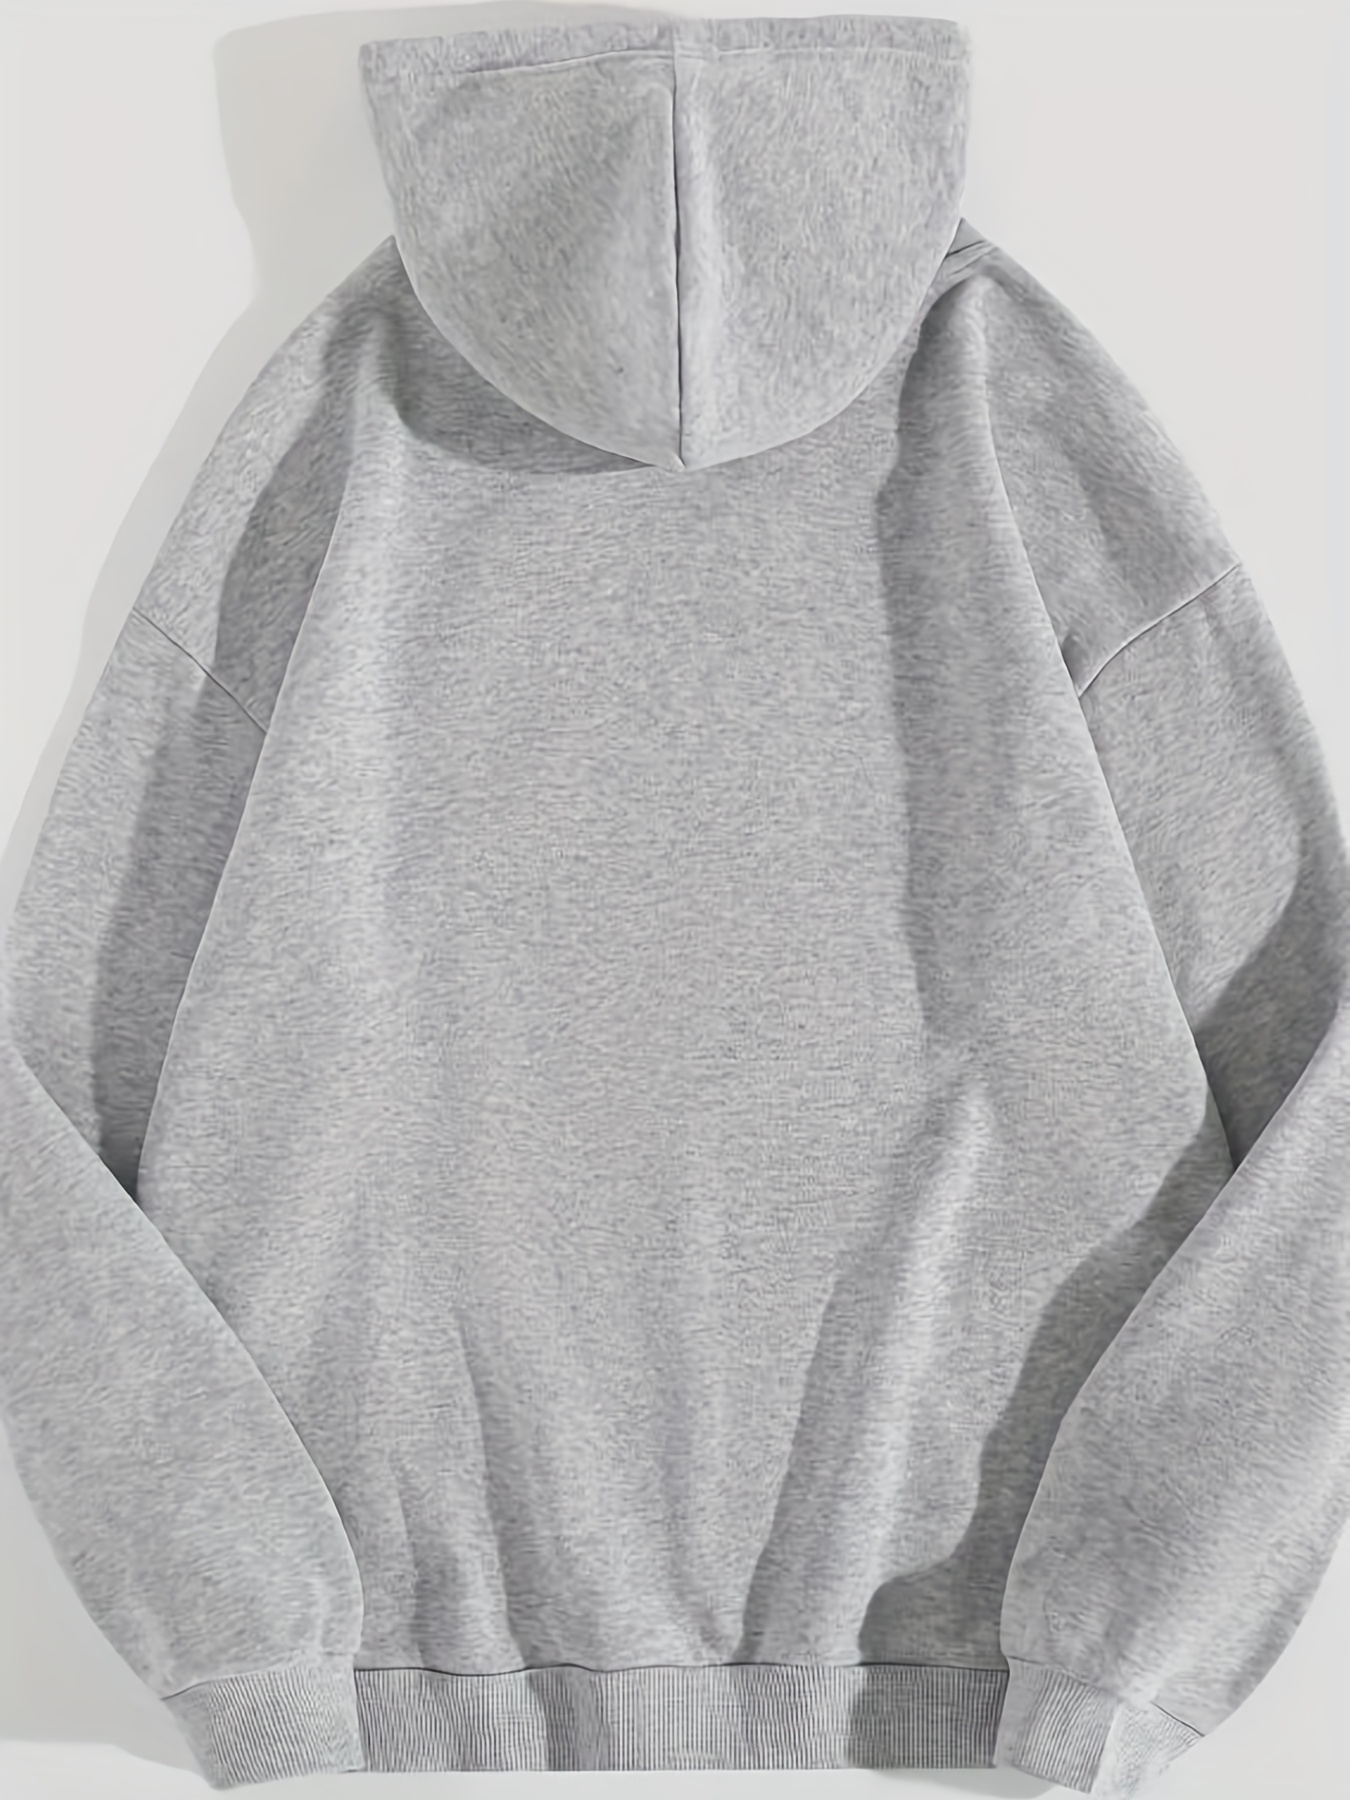 cute penguin print kangaroo pocket hoodie casual long sleeve drawstring hoodies sweatshirt womens clothing details 11